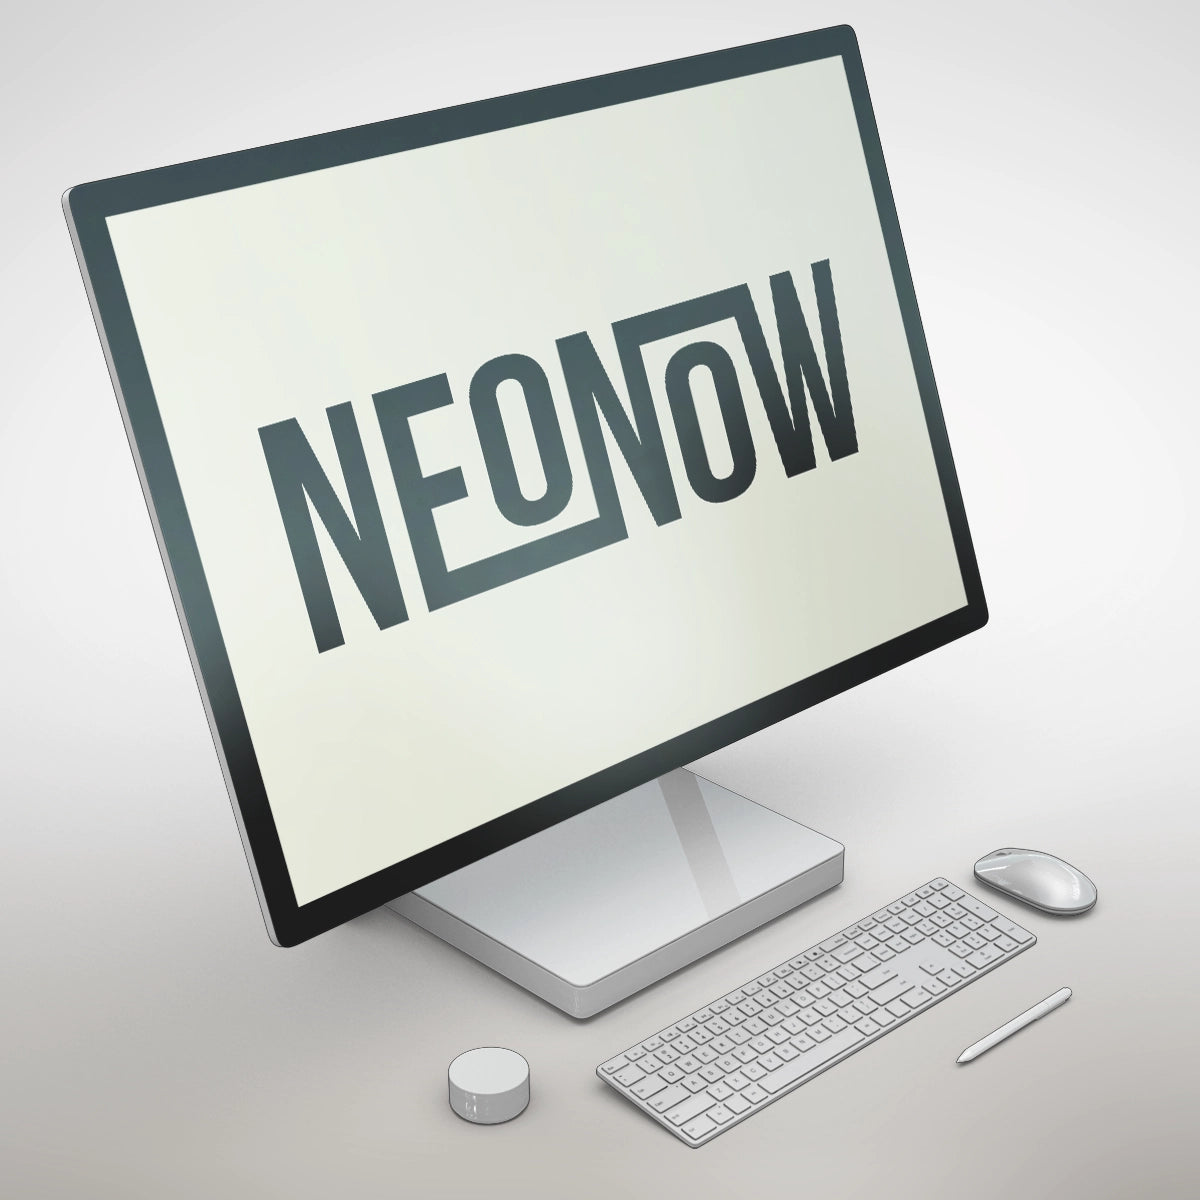 NEONOW.com